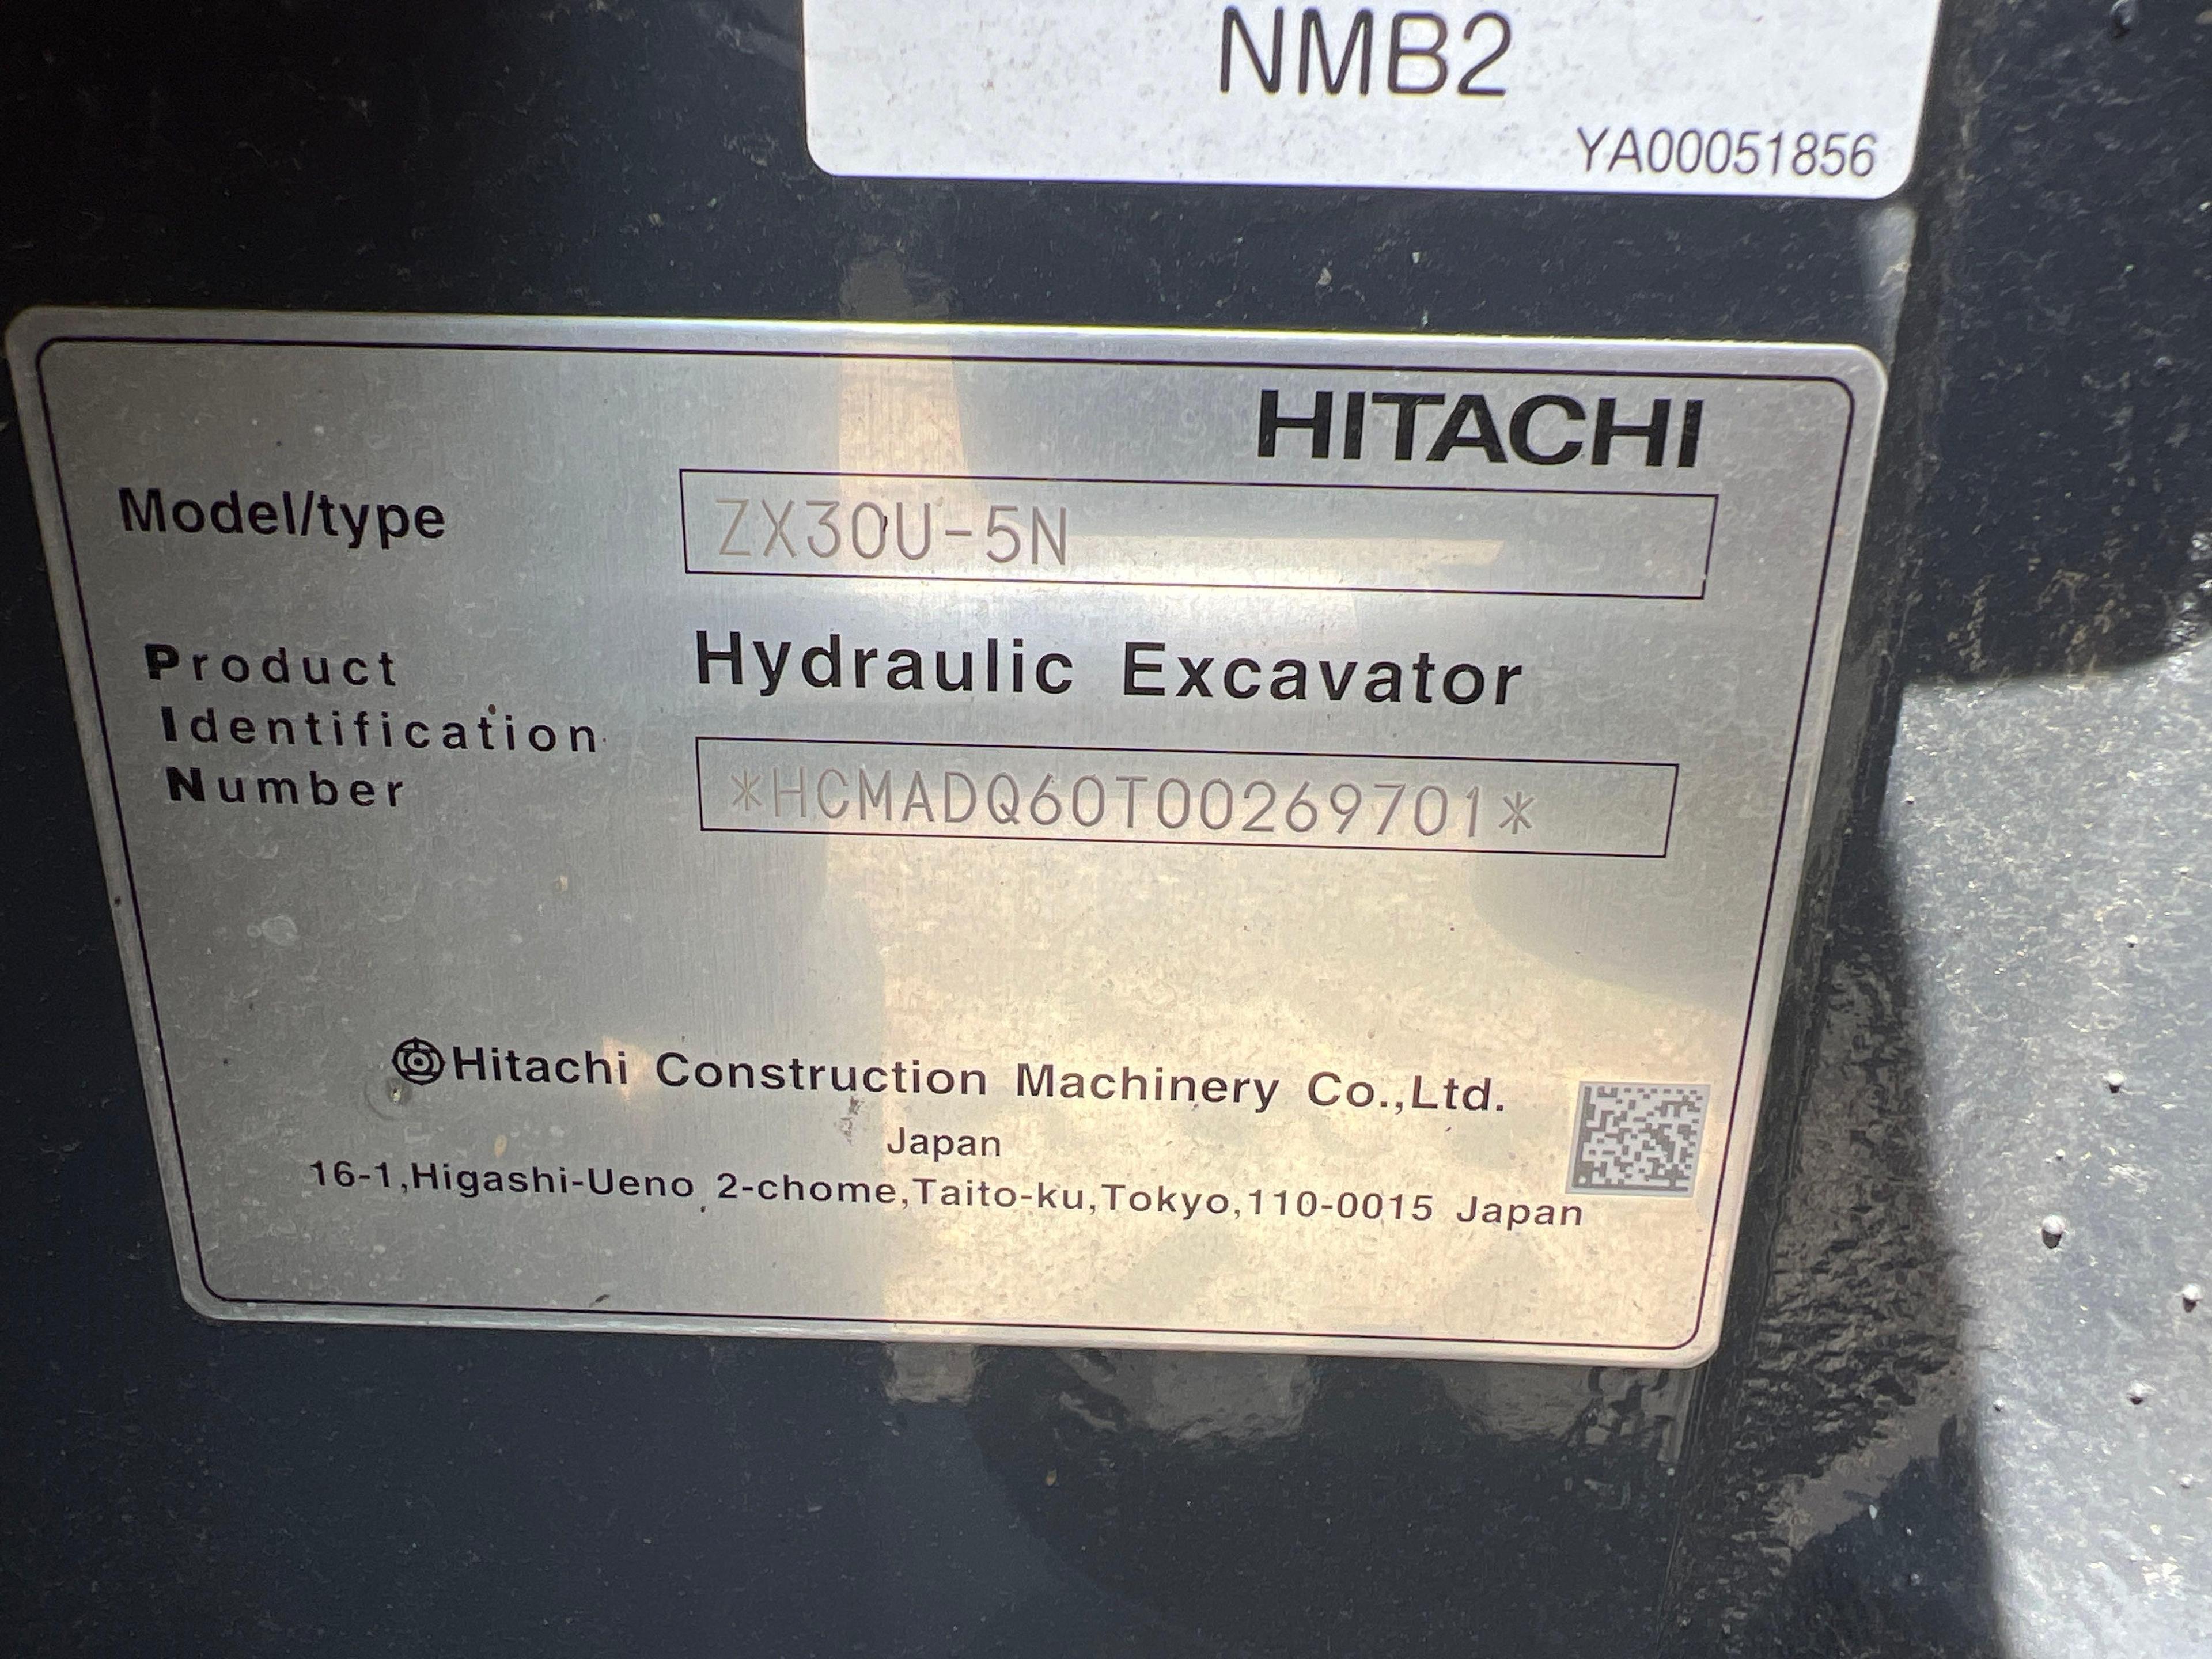 NEW UNUSED 2023 HITACHI ZX30U-5N...HYDRAULIC EXCAVATOR... SN-269701 powered by Yanmar diesel engine,